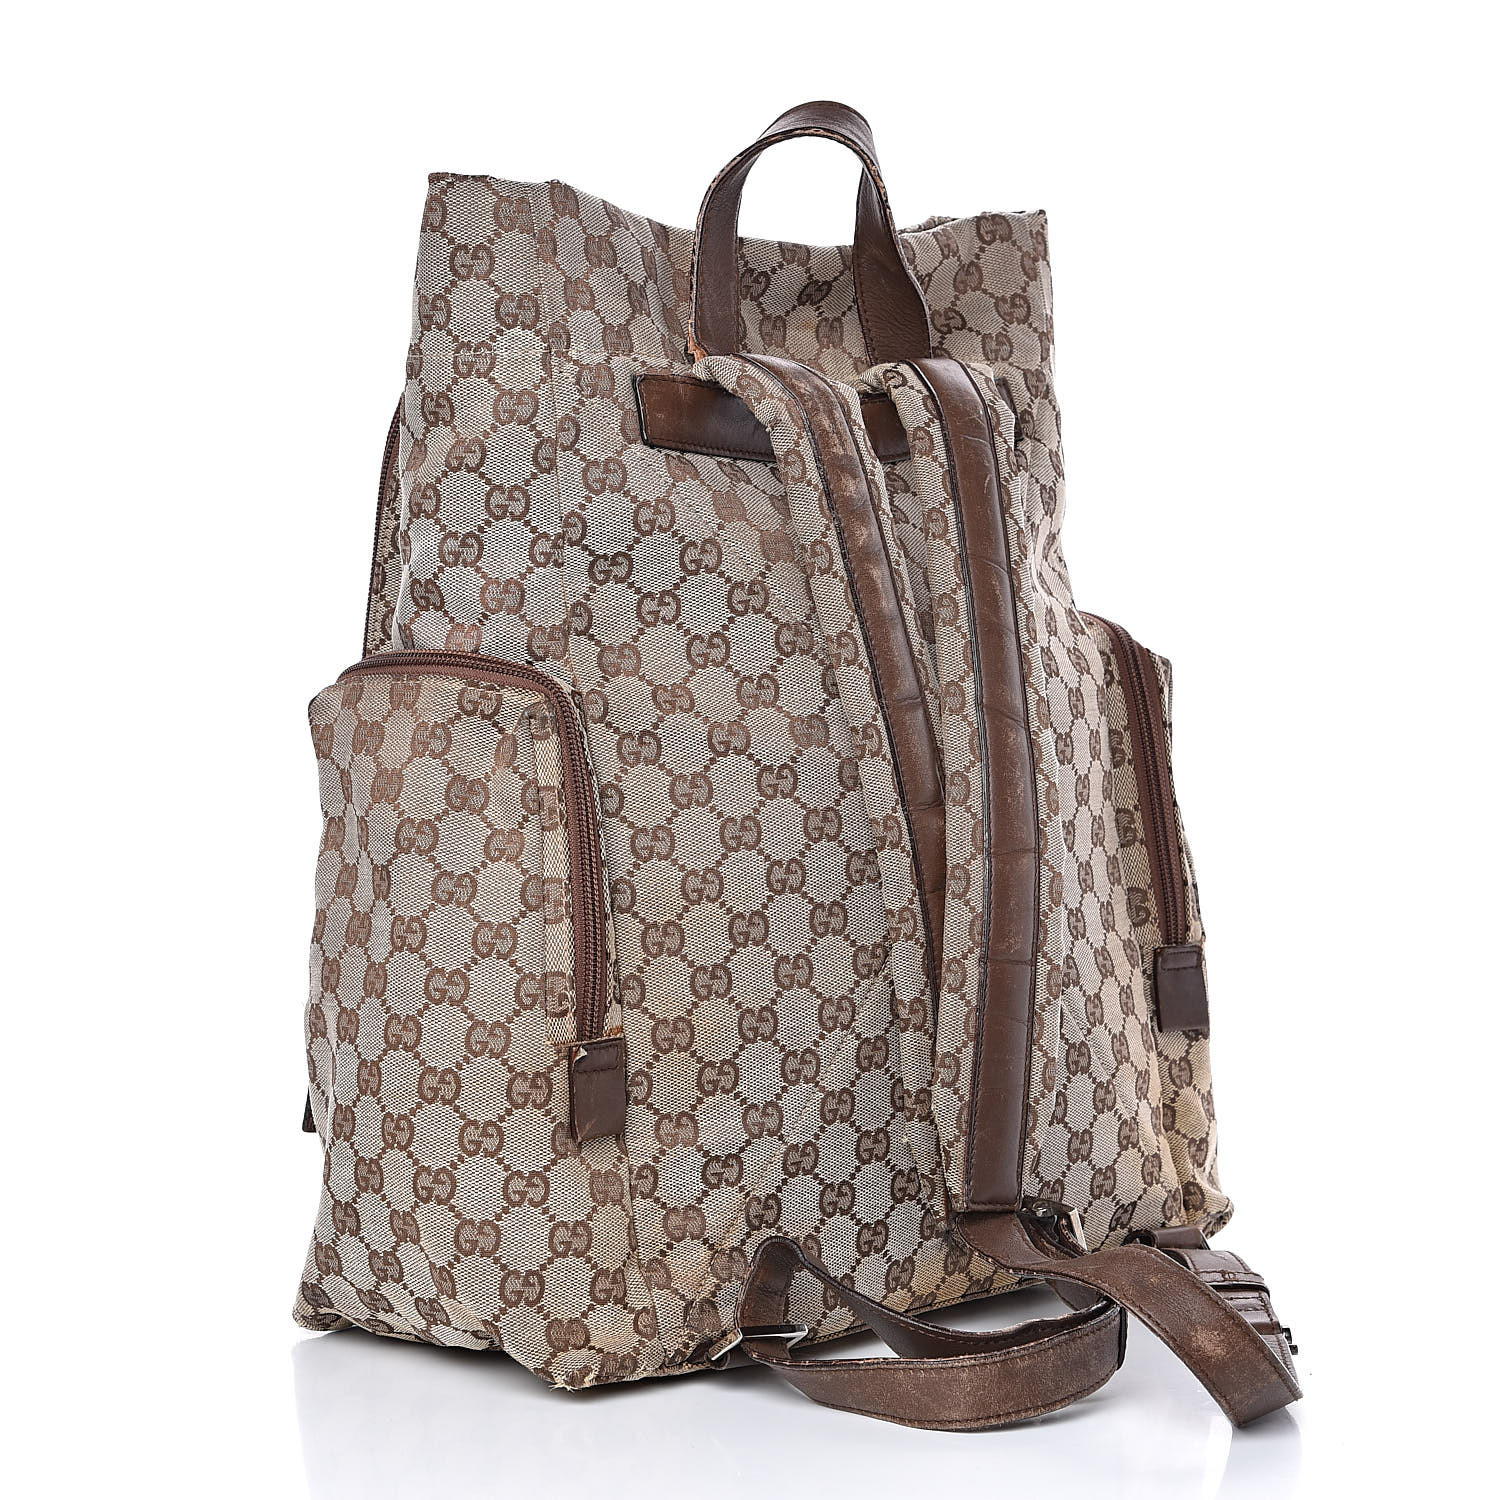 GUCCI Monogram Backpack Diaper Bag Brown 518568